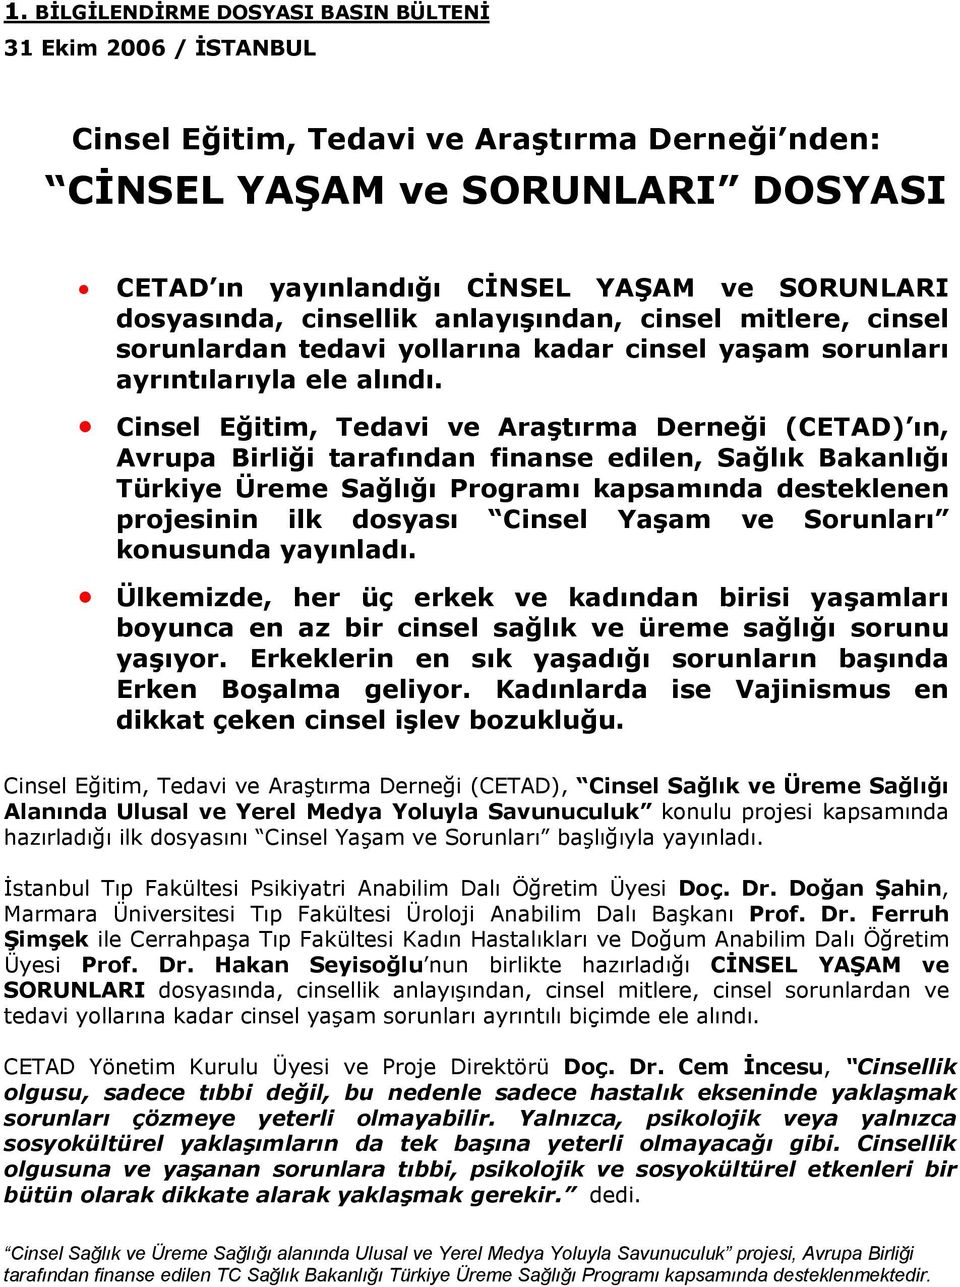 Cinsel Eğitim, Tedavi ve Araştırma Derneği (CETAD) ın, Avrupa Birliği tarafından finanse edilen, Sağlık Bakanlığı Türkiye Üreme Sağlığı Prgramı kapsamında desteklenen prjesinin ilk dsyası Cinsel